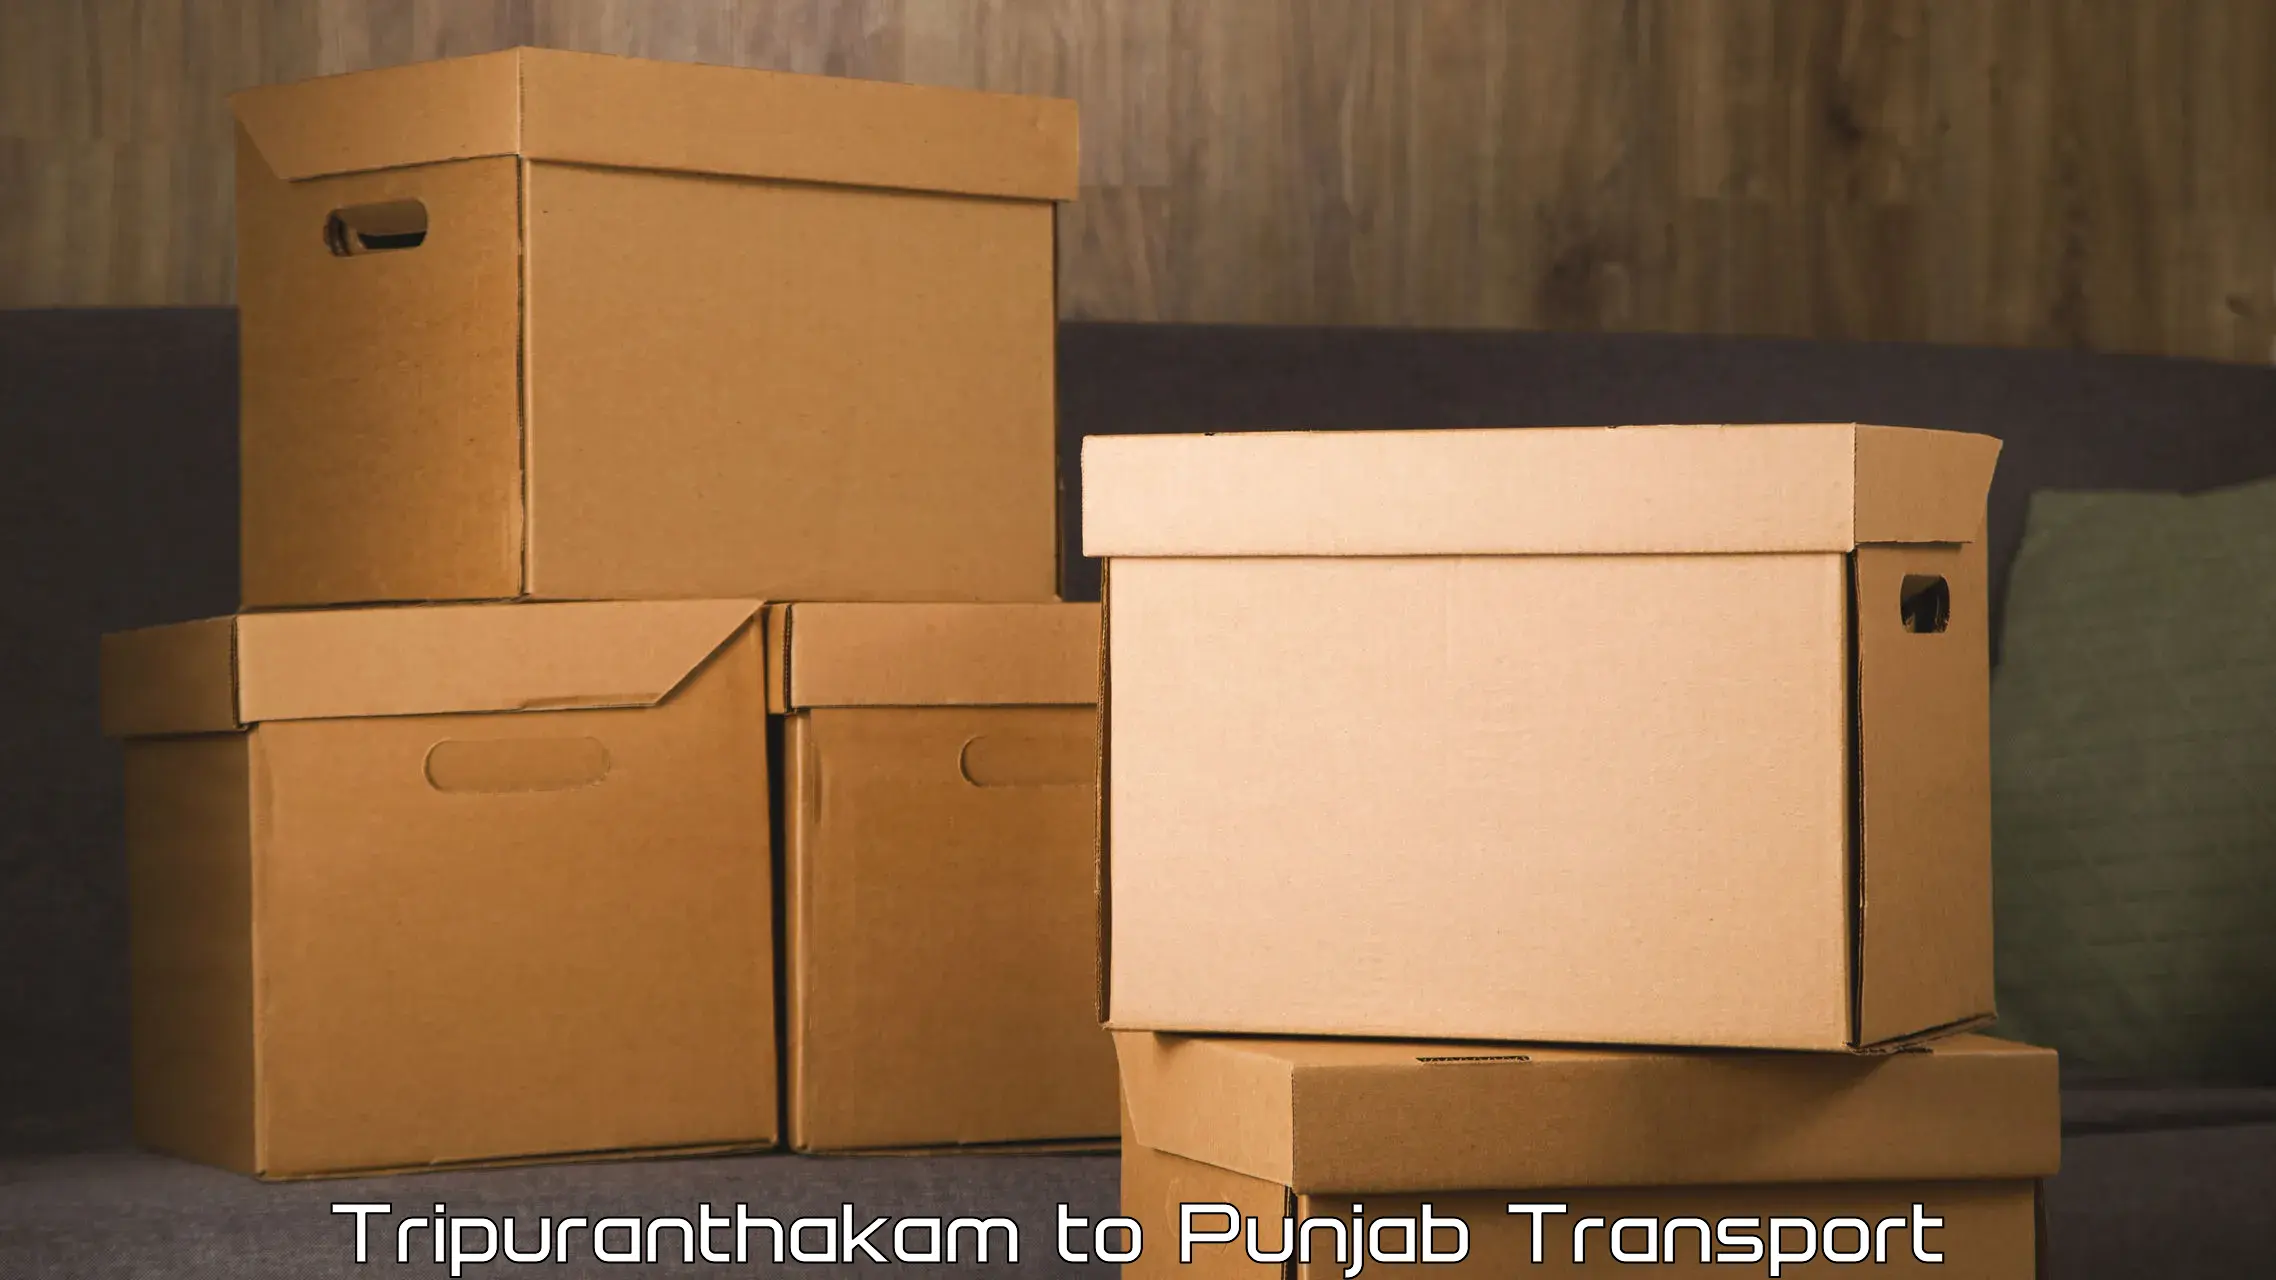 Two wheeler parcel service in Tripuranthakam to Patti Tarn Tara